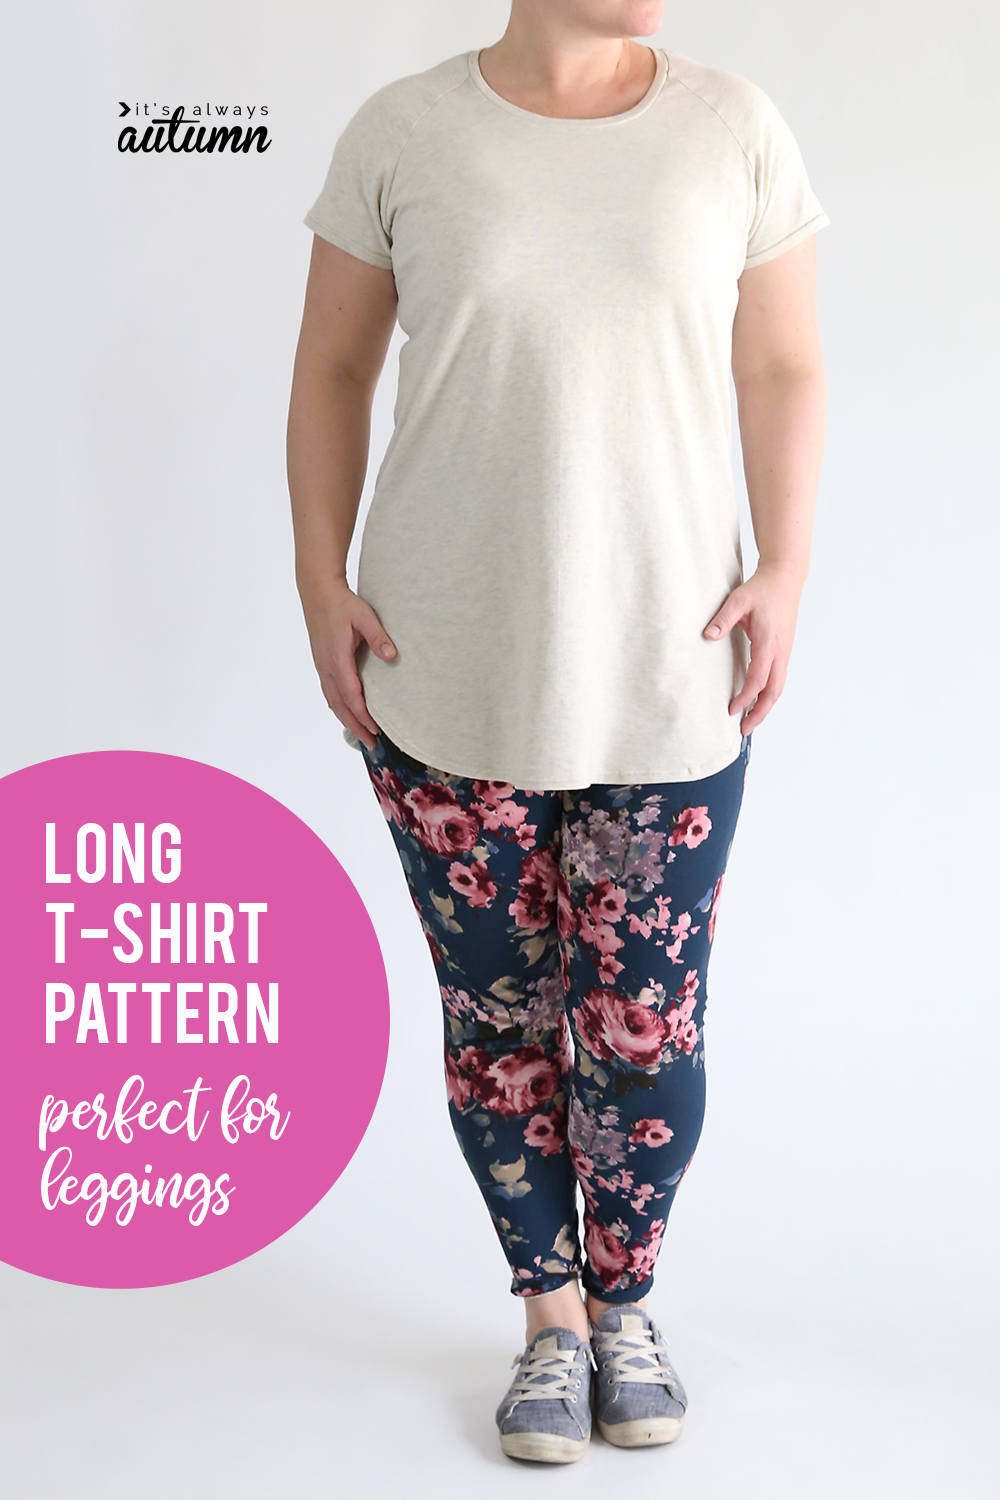 Long raglan t-shirt sewing pattern - It's Always Autumn